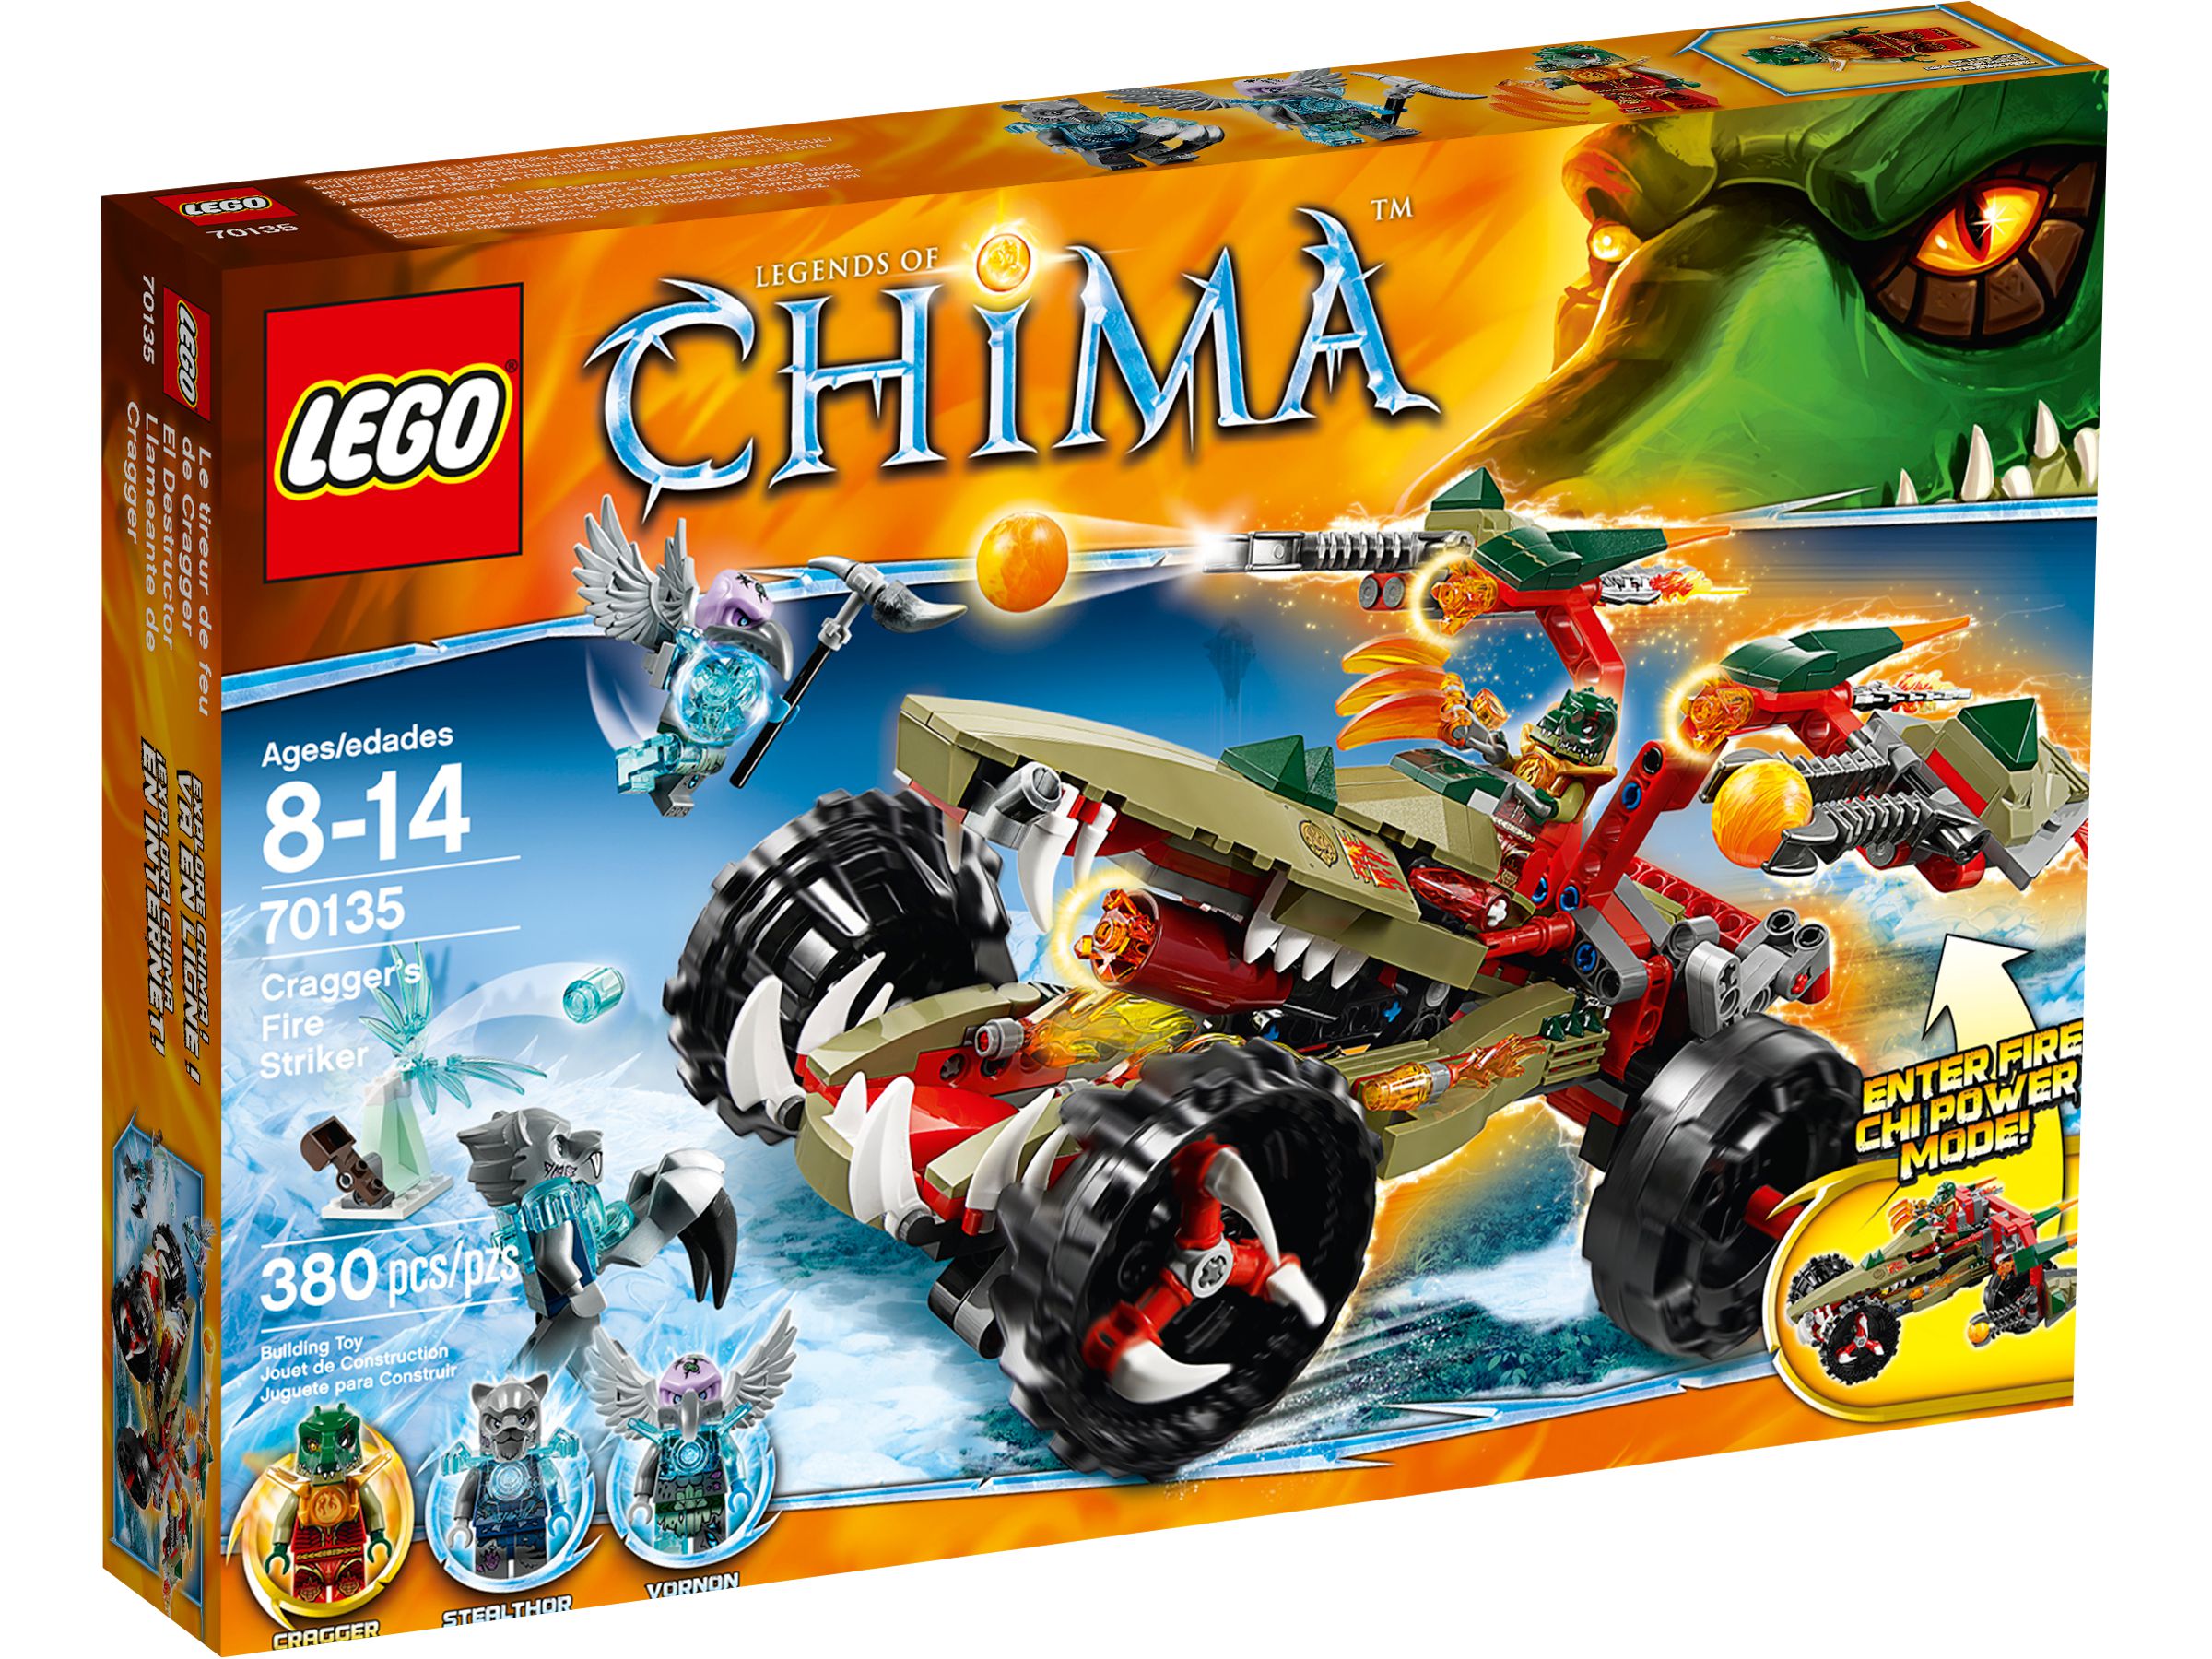 LEGO Legends Of Chima 70135 Craggers Feuer-Striker LEGO_70135_alt1.jpg